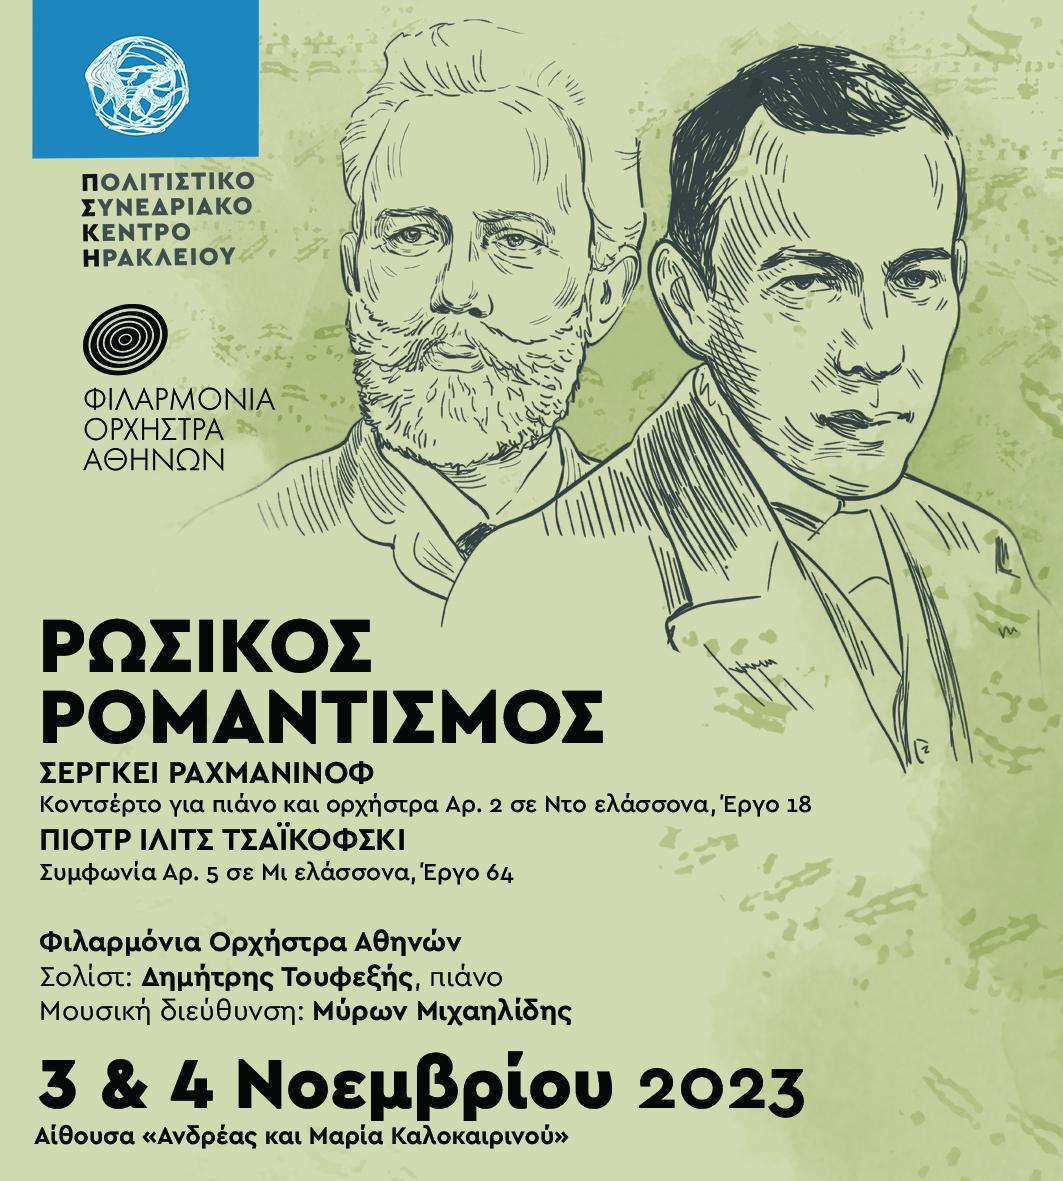 Ρωσικός ρομαντισμός: Συμφωνική συναυλία με έργα Σεργκέι Ραχμάνινοφ και Πιότρ Ίλιτσ Τσαϊκόφσκι, στο ΠΣΚΗ